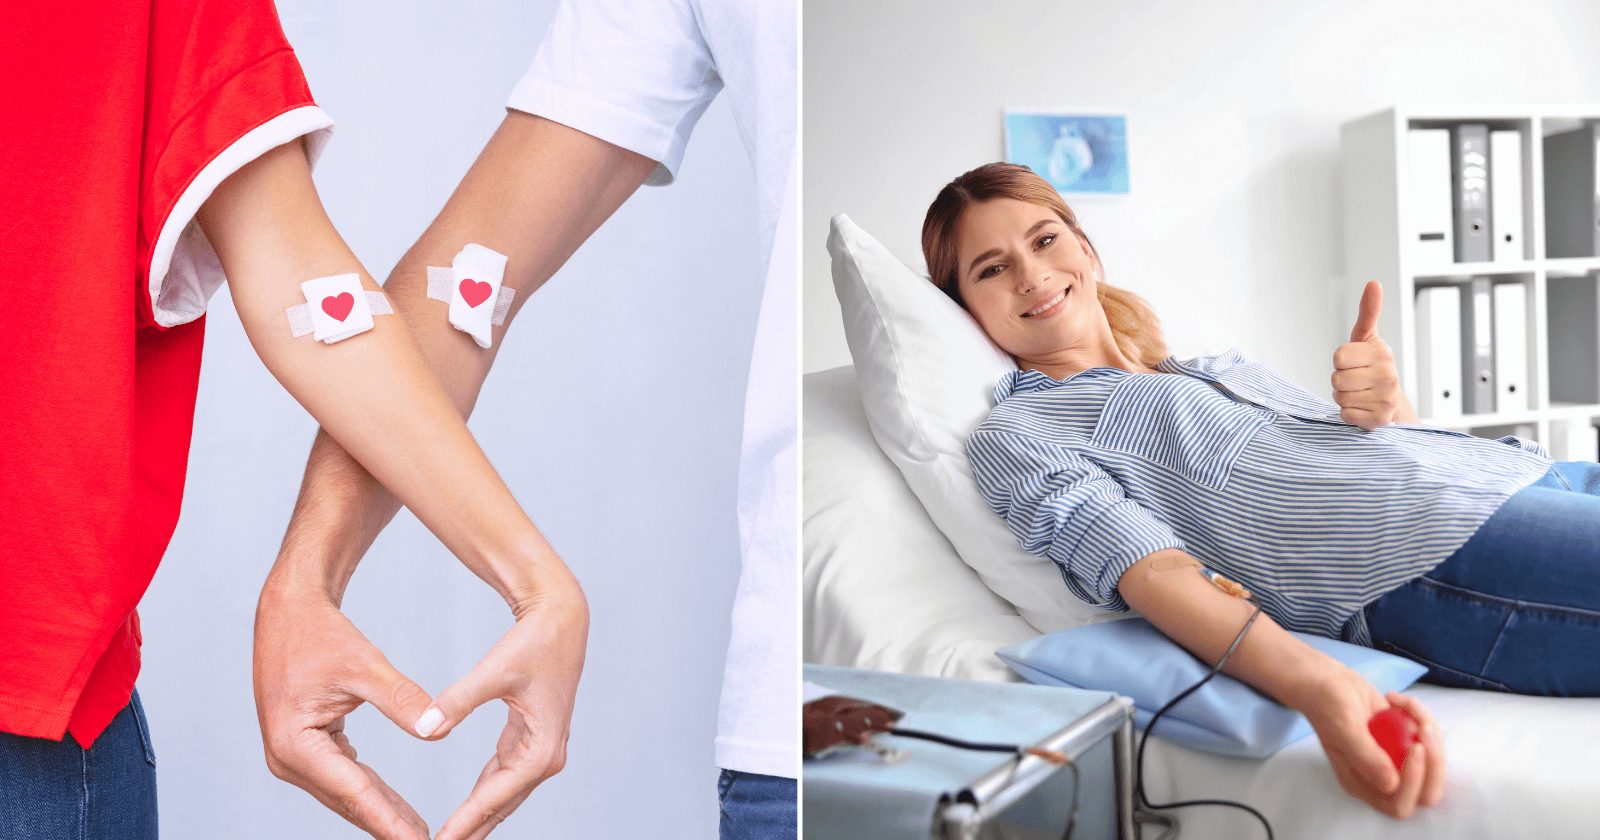 58 frases sobre doar sangue que trazem motivação para essa ação tão importante